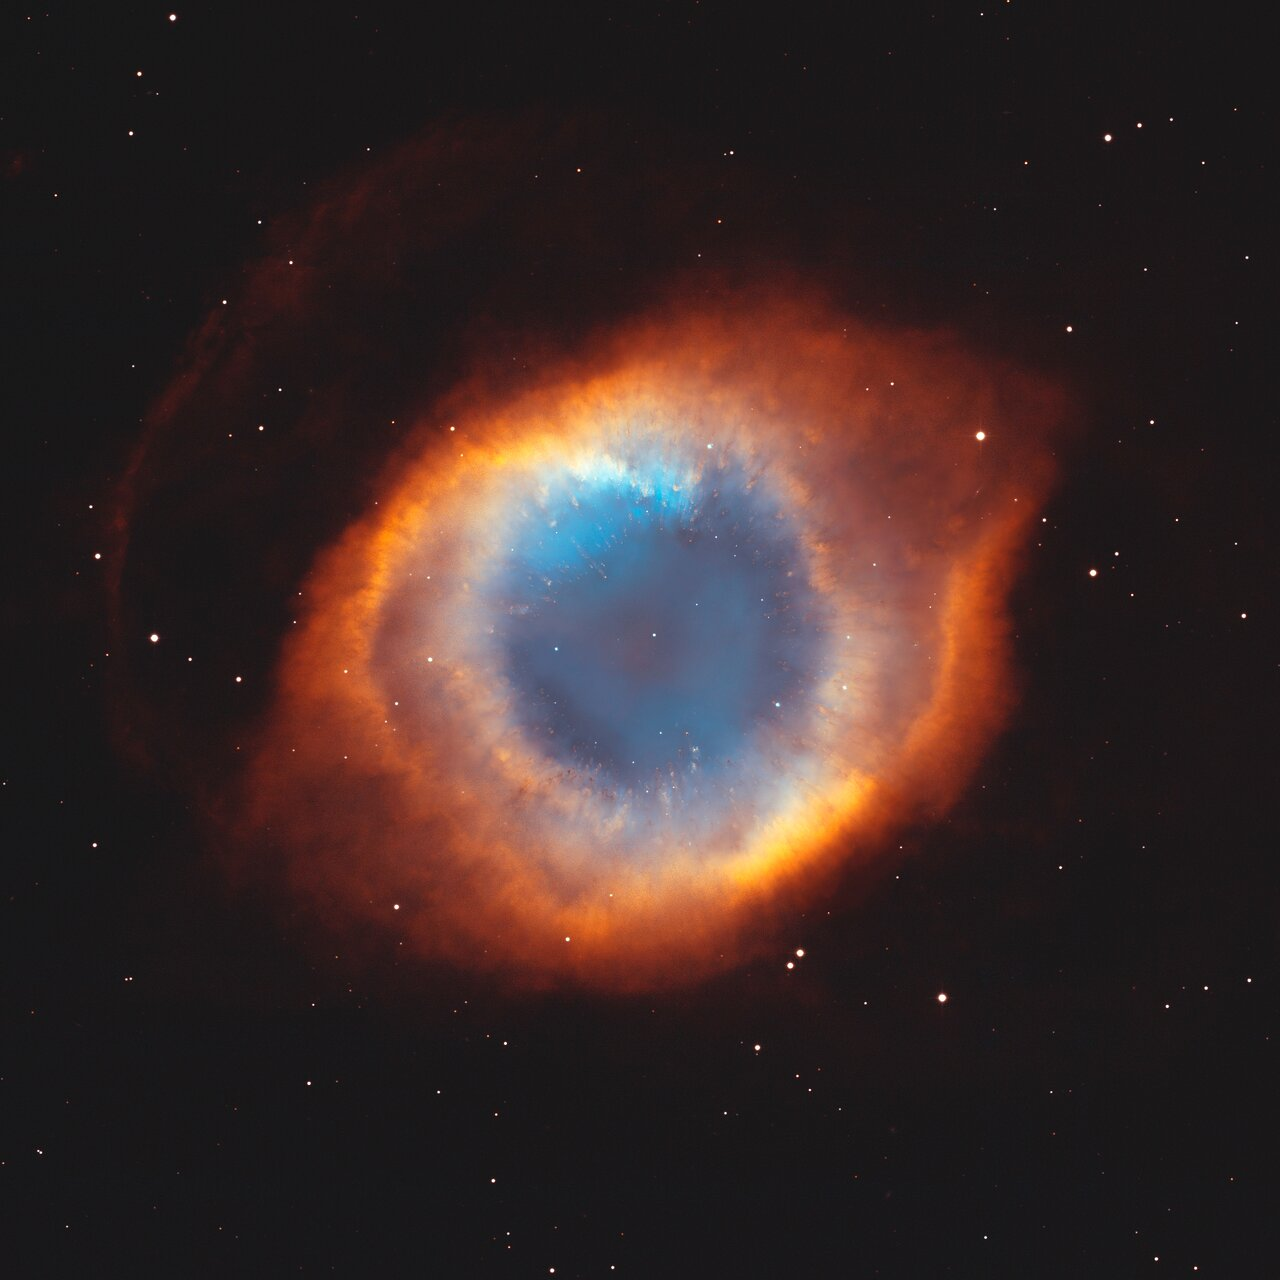 Cat's Eye nebula from NOIRLab